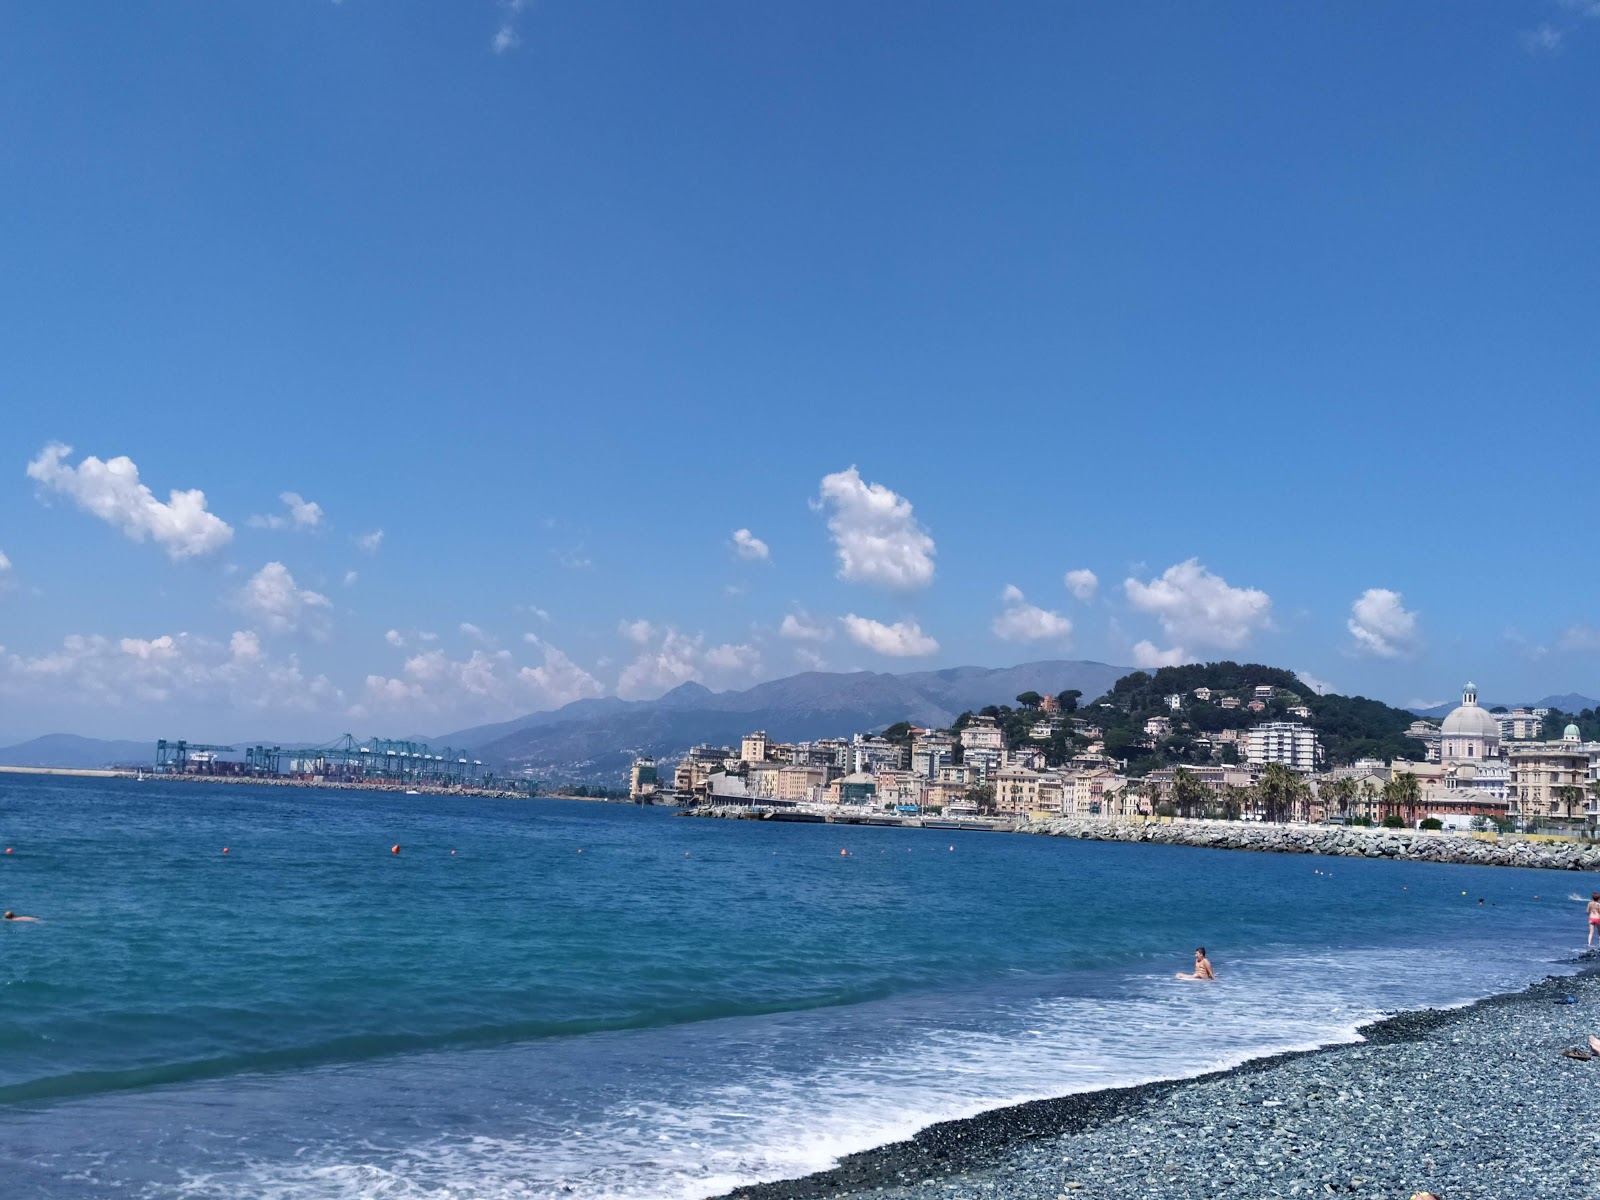 Foto von Spiaggia Multedo - beliebter Ort unter Entspannungskennern